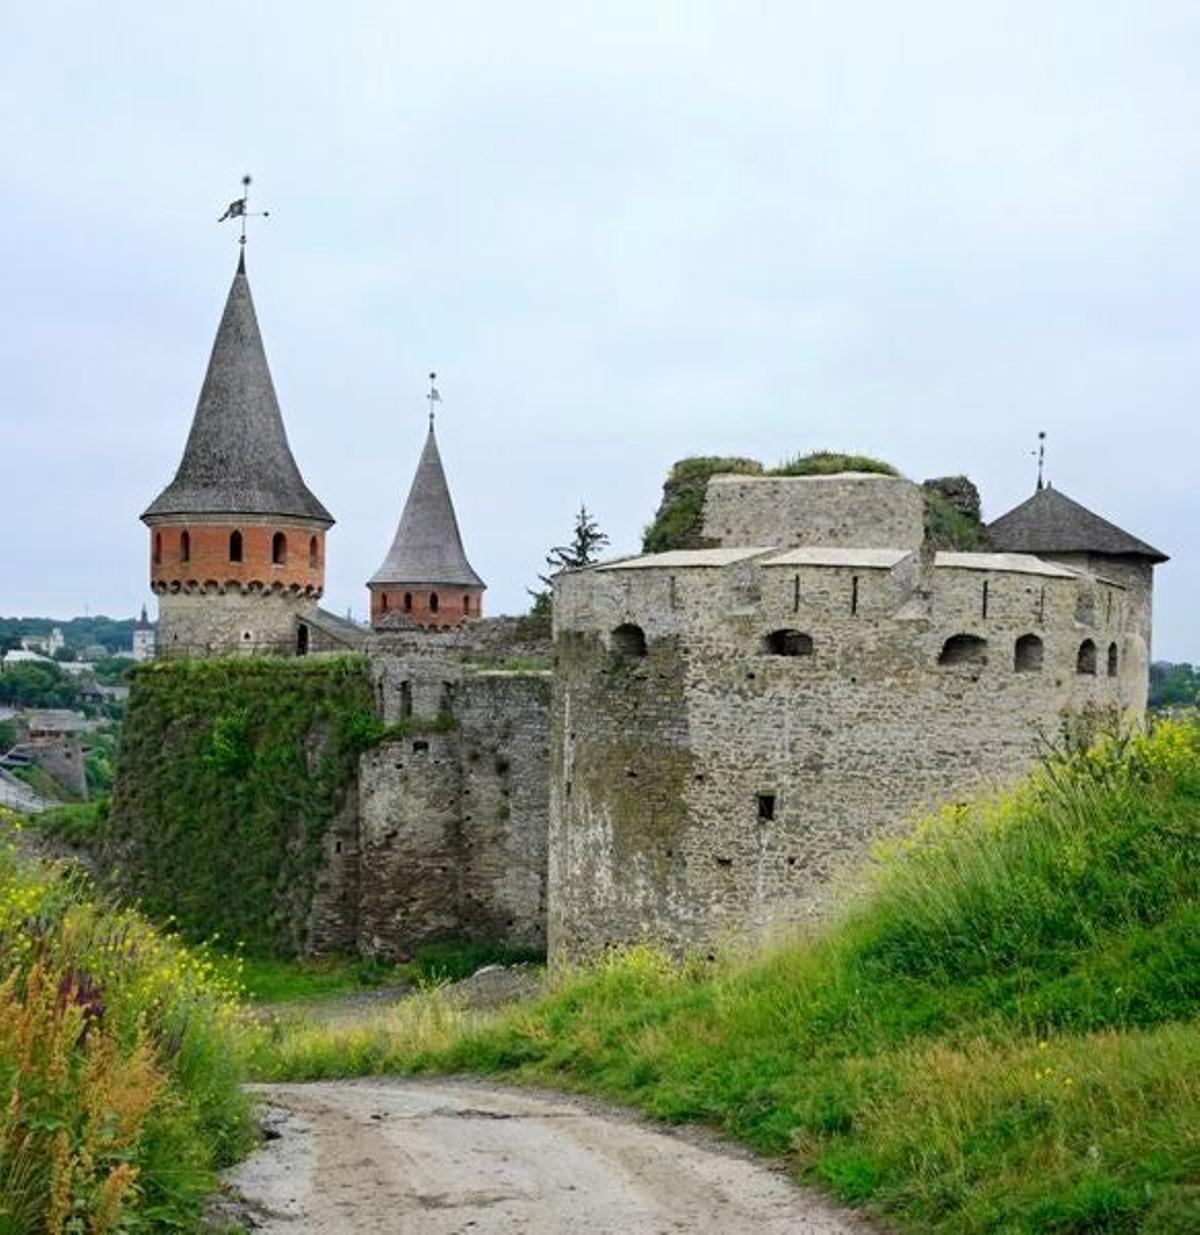 El castillo de Kamianets-Podilskyi, cuenta con más de siete siglos de antiguedad y es una da las siete maravillas de Ucrania